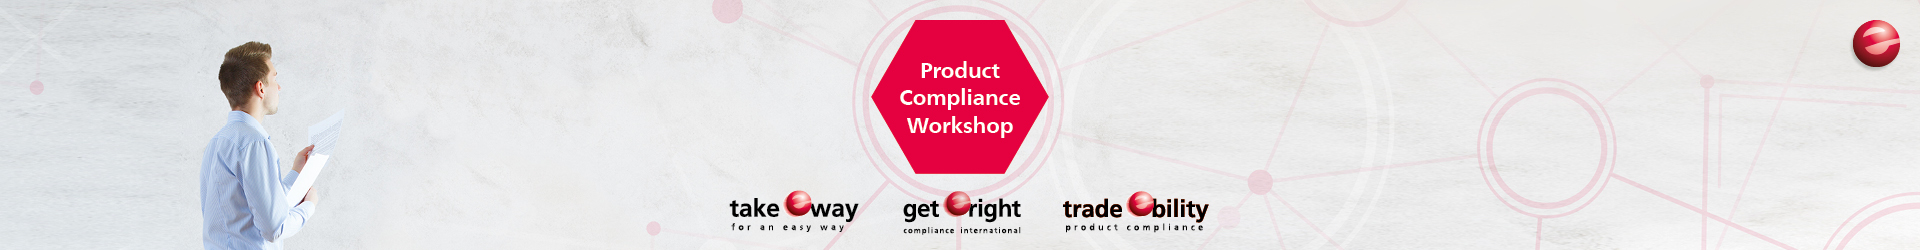 Header-Bild für Product Compliance Workshop